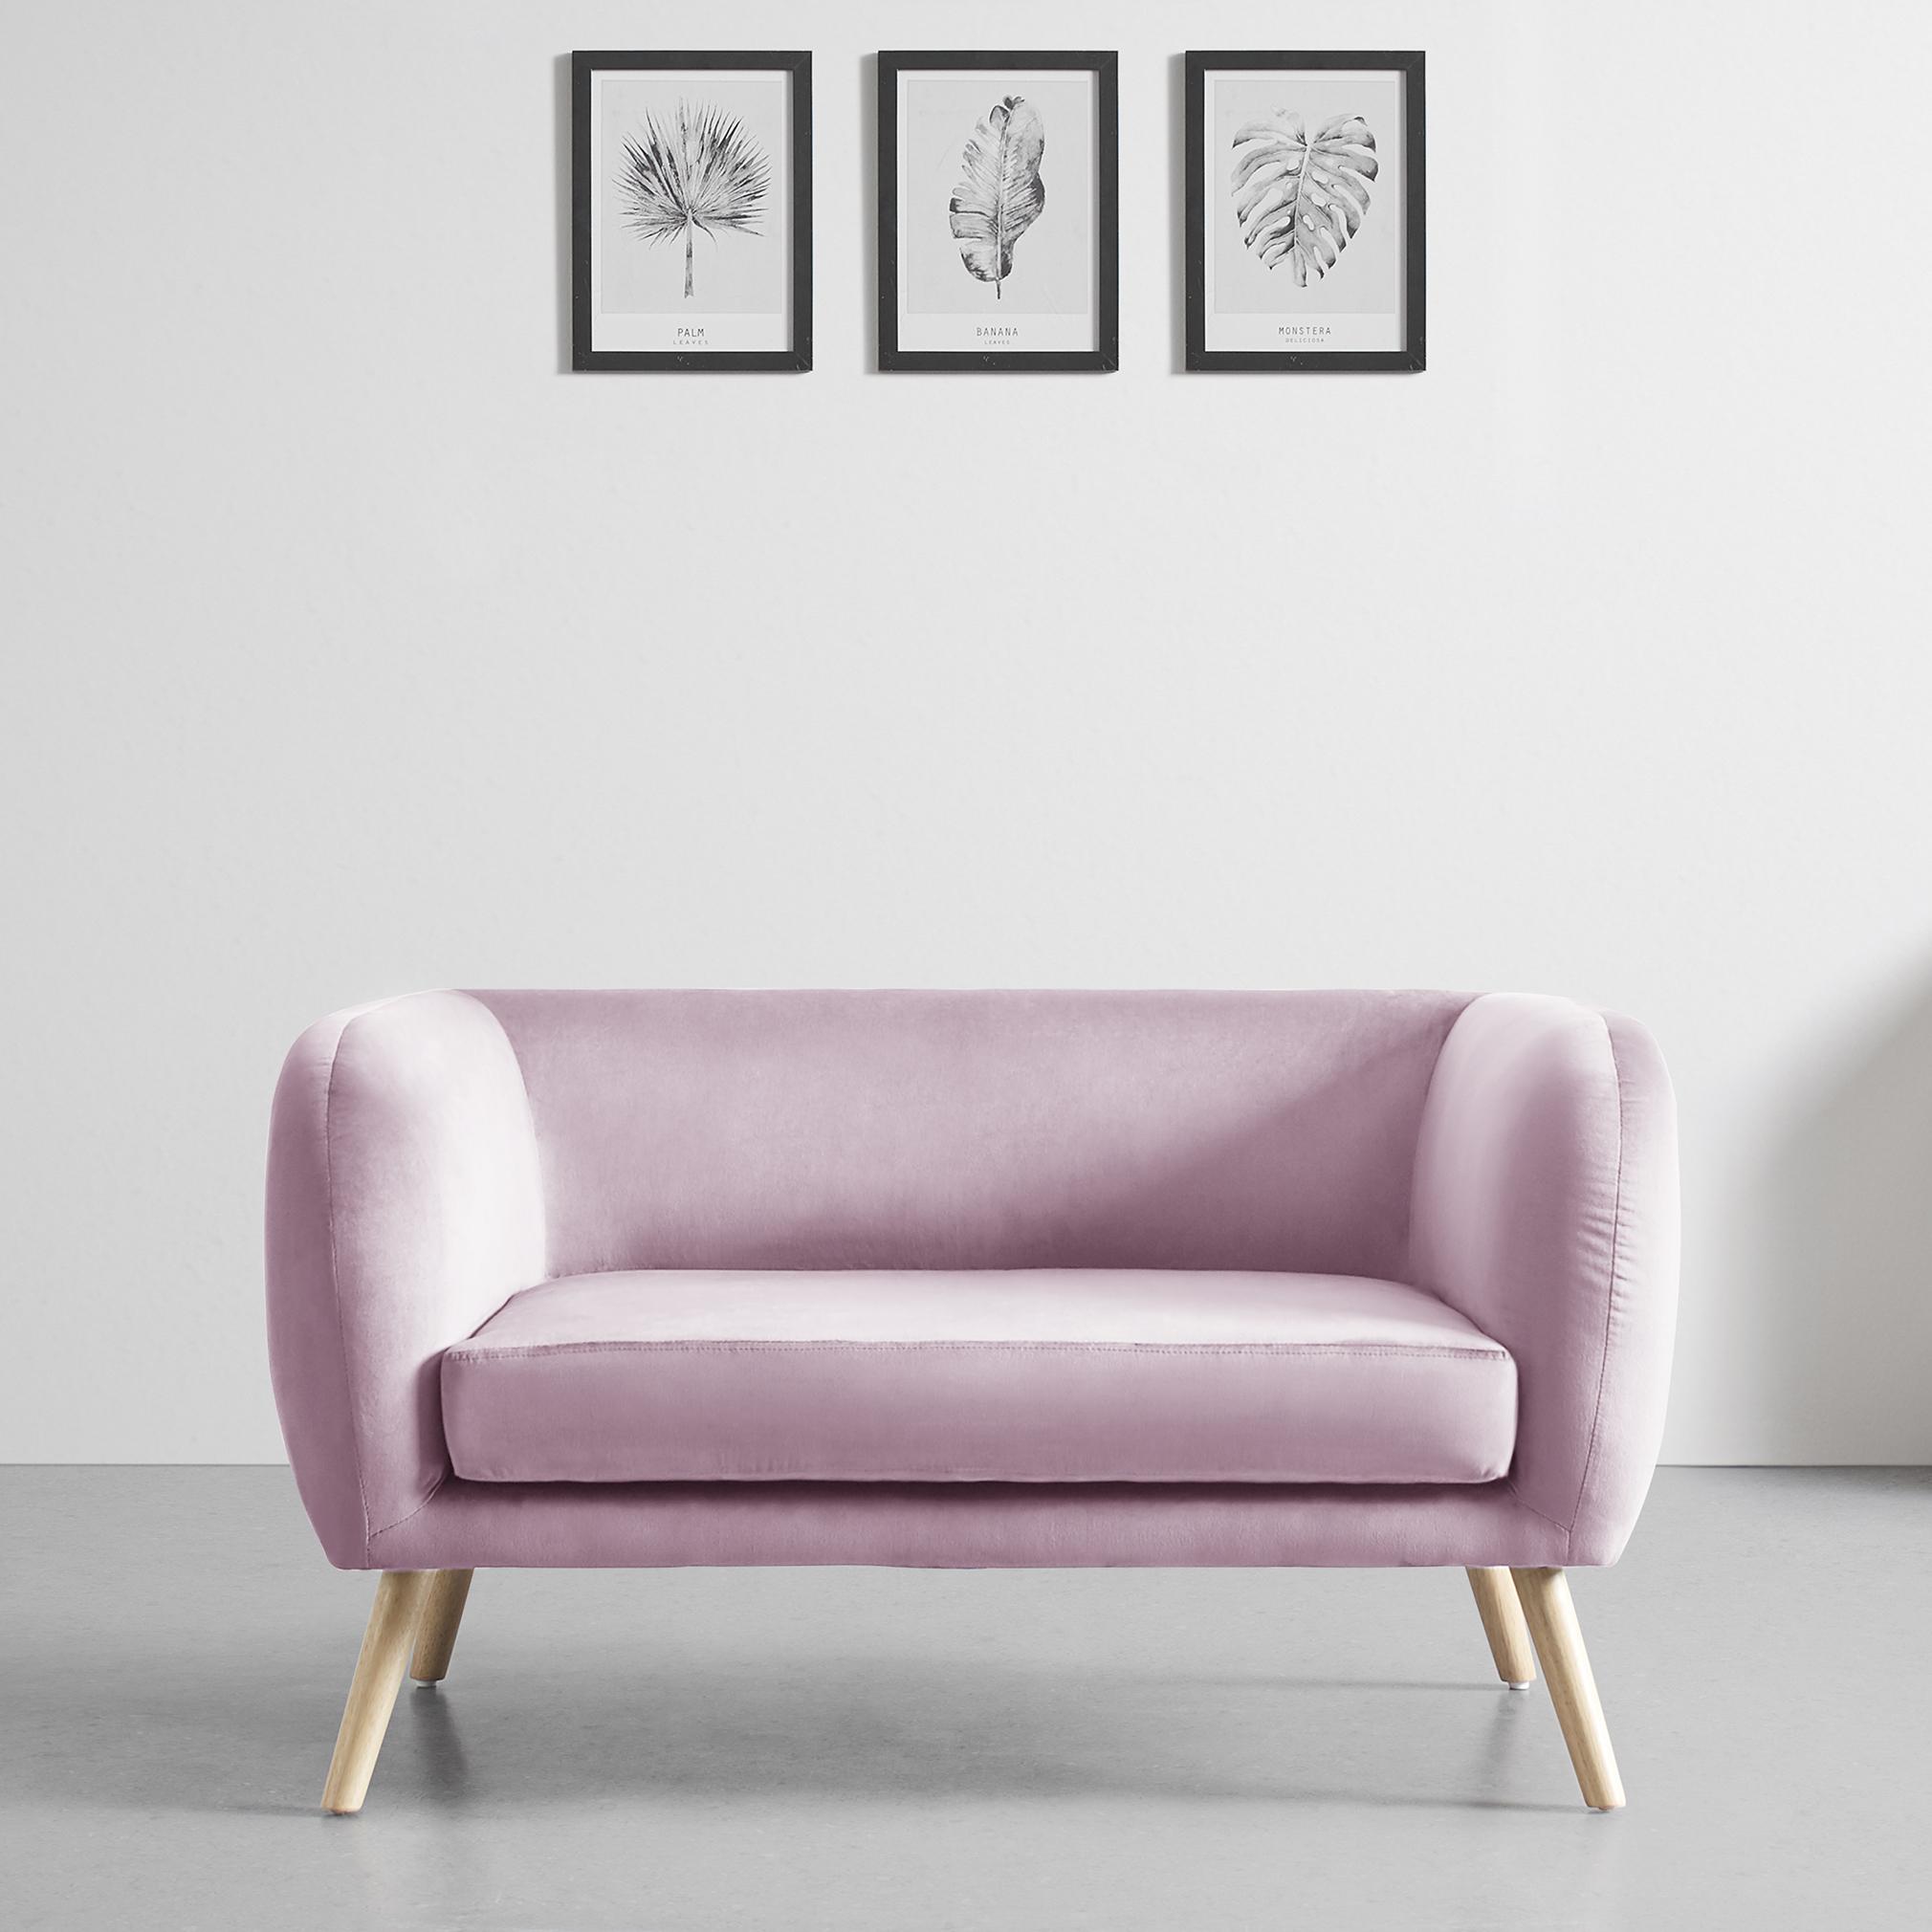 Malá Pohovka Bruno, Růžová, Sametová - růžová/barvy dubu, Moderní, dřevo/textil (124/68/71cm) - Modern Living